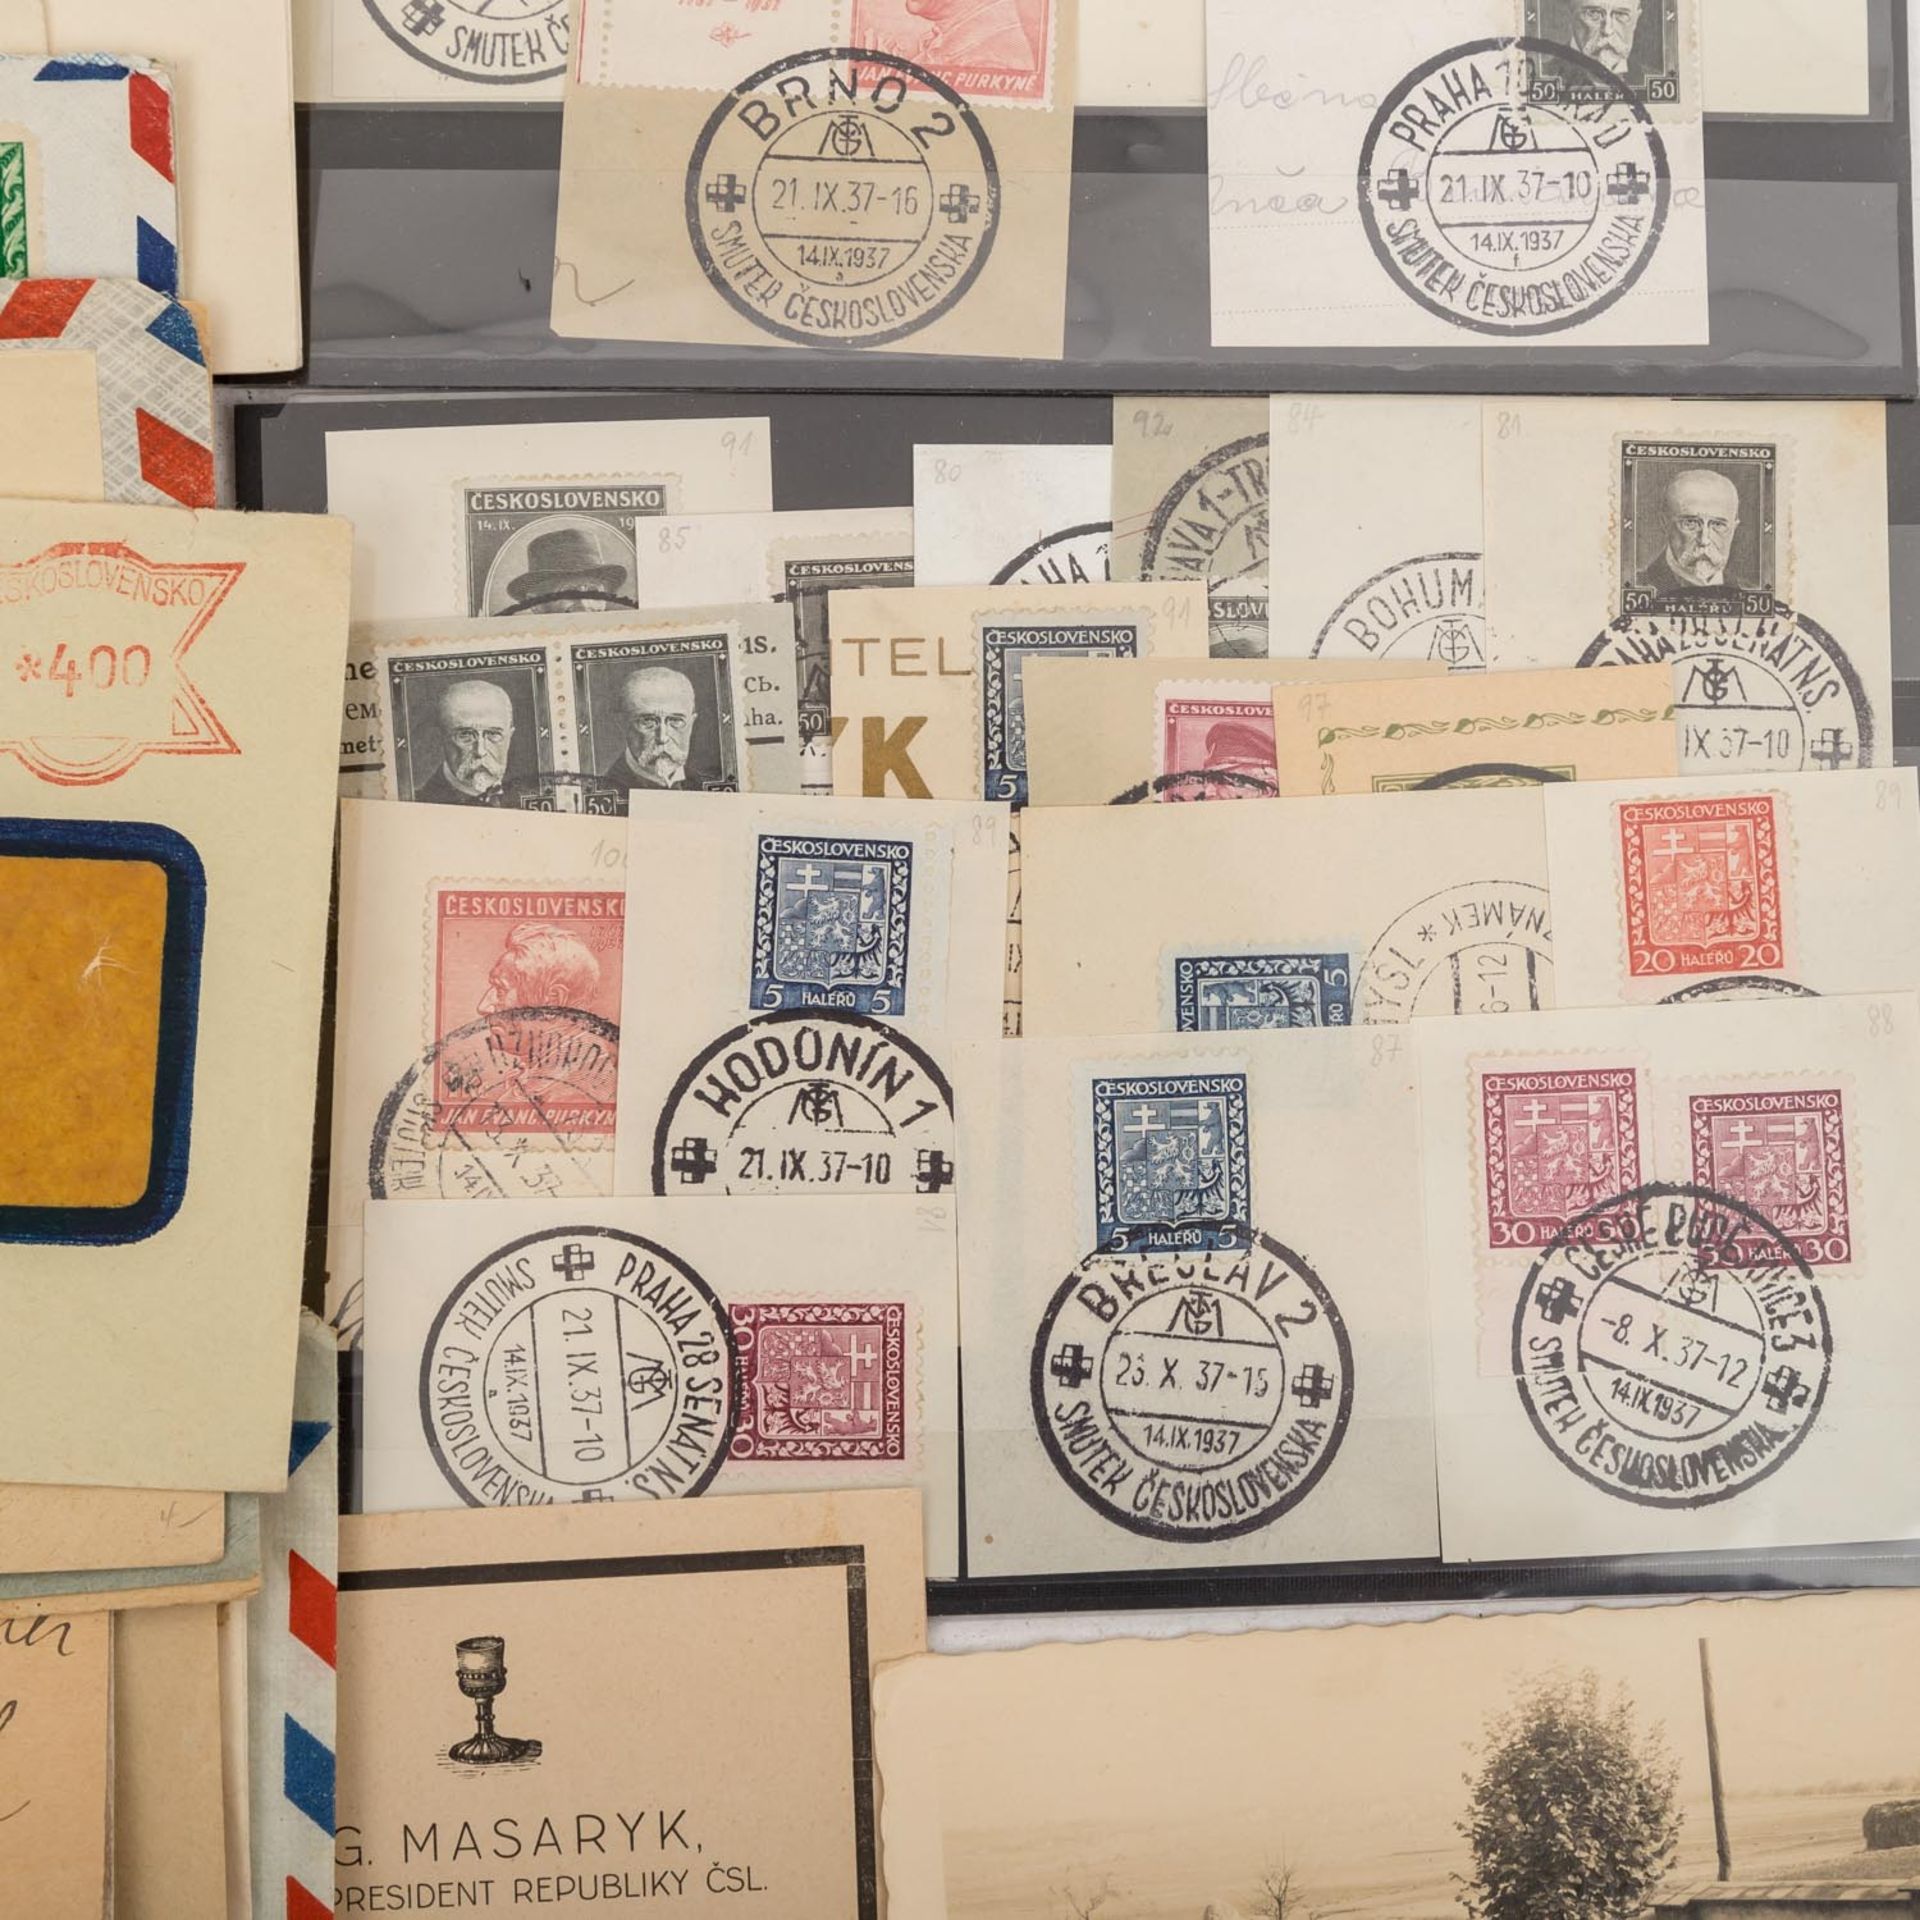 CSR, Lot von gut 100 Briefen, Briefstücken etc.aus der Zeit von 1918 bis 1955 mit einem Speziallot - Bild 6 aus 7